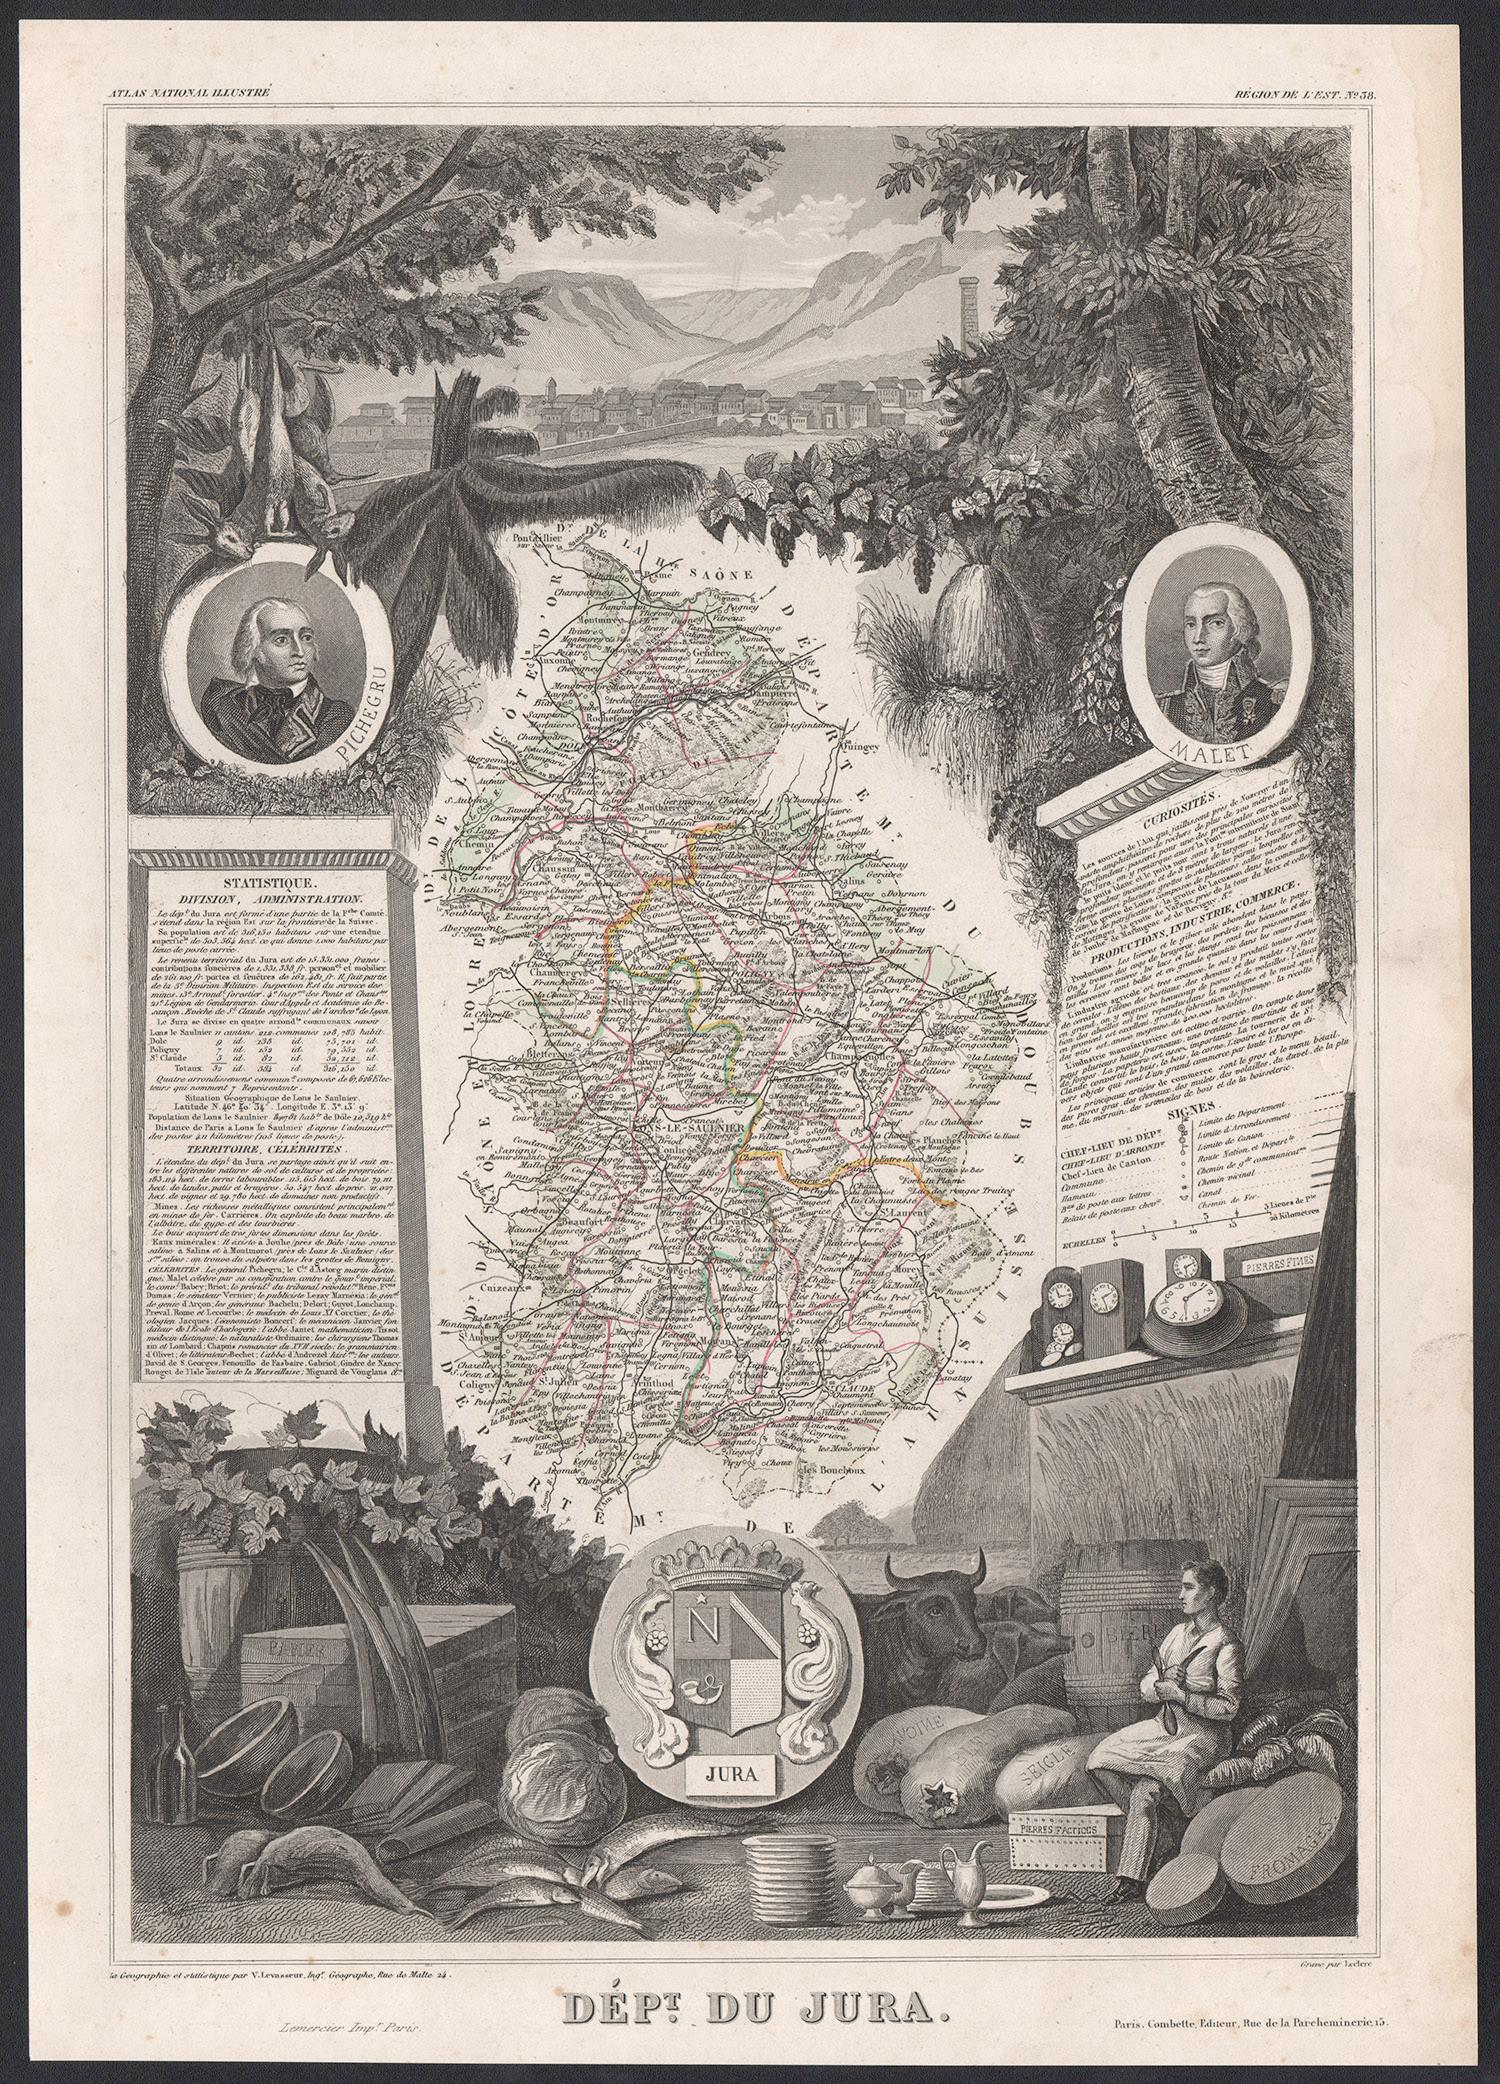 Jura, France. Carte ancienne d'un département français, 1856